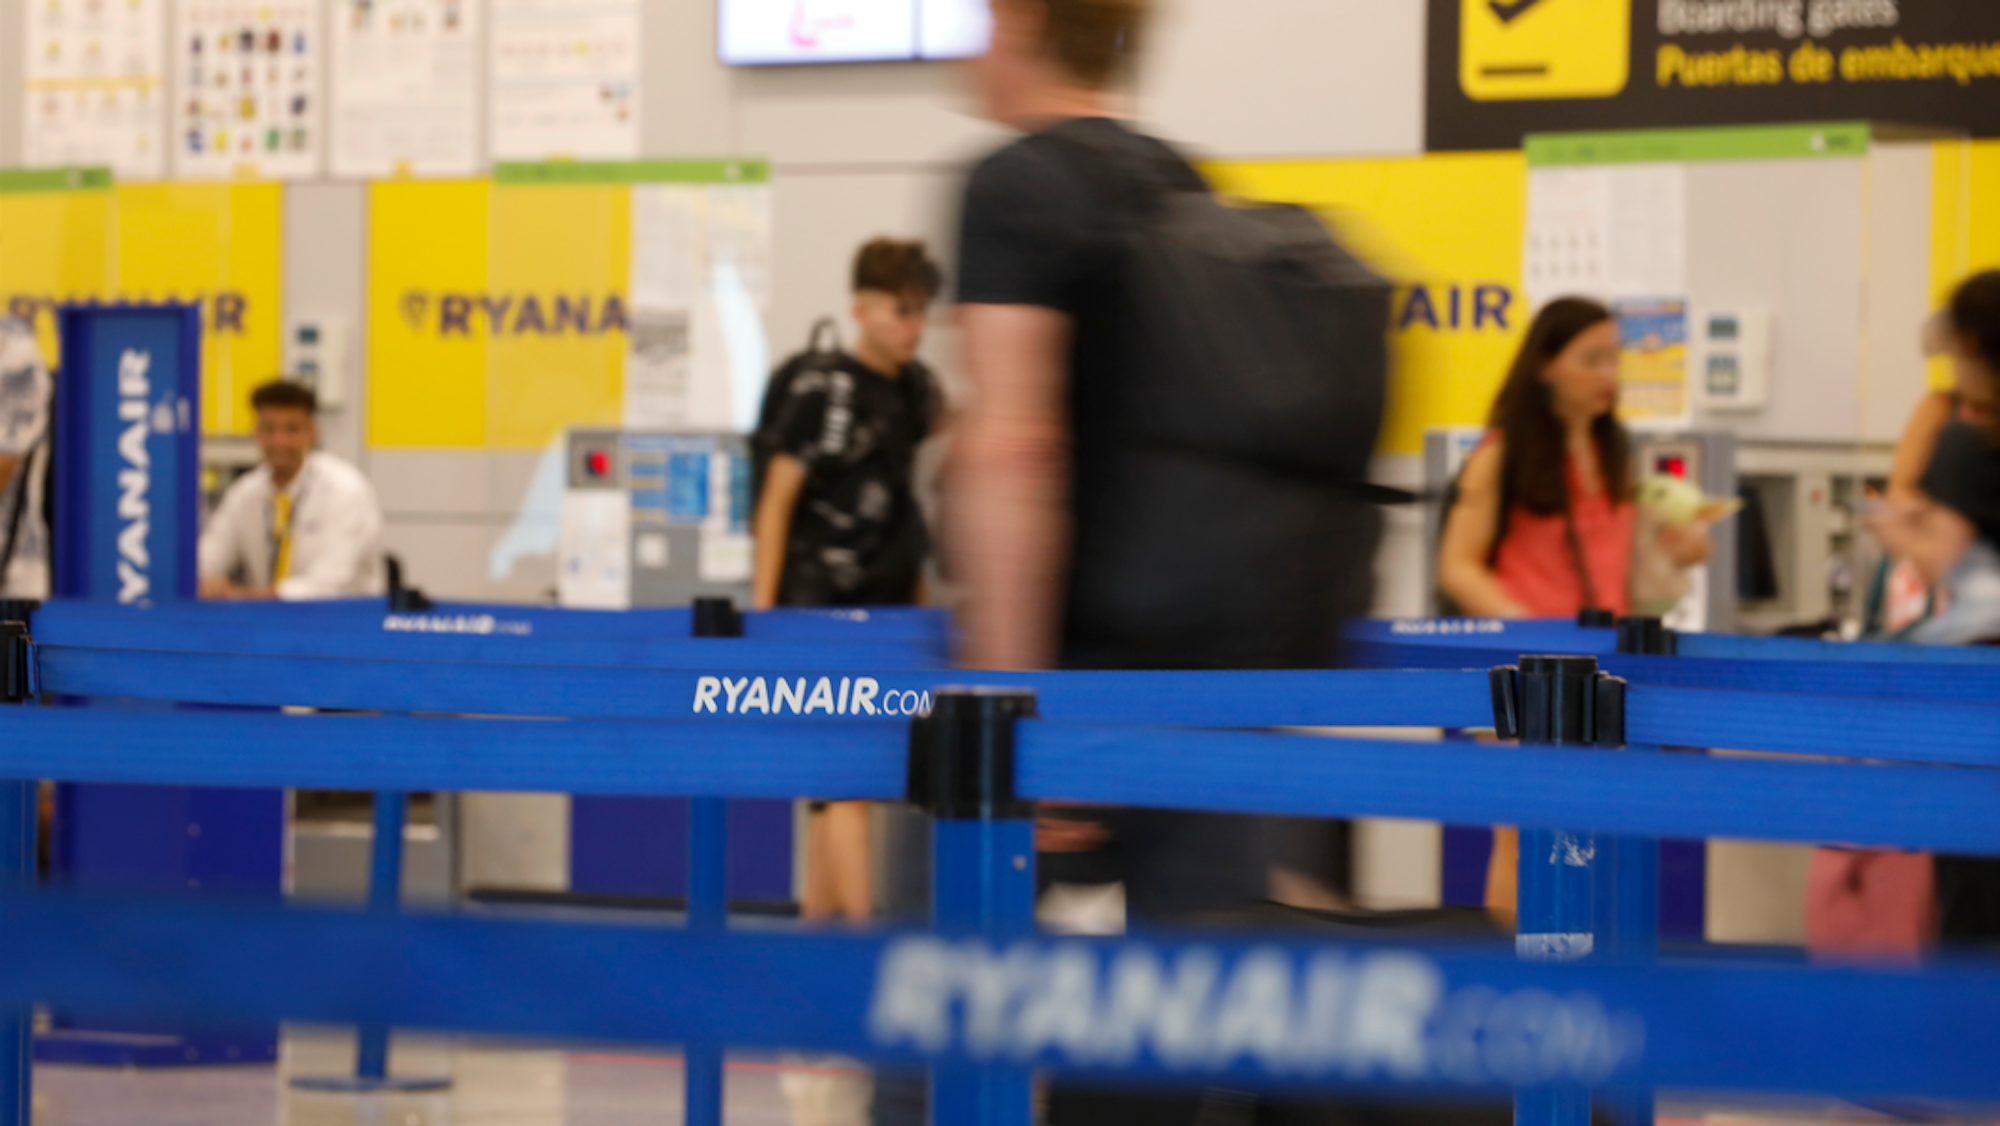 Menschen kommen zu den Abfertigungsschaltern von Ryanair am Flughafen Palma de Mallorca.